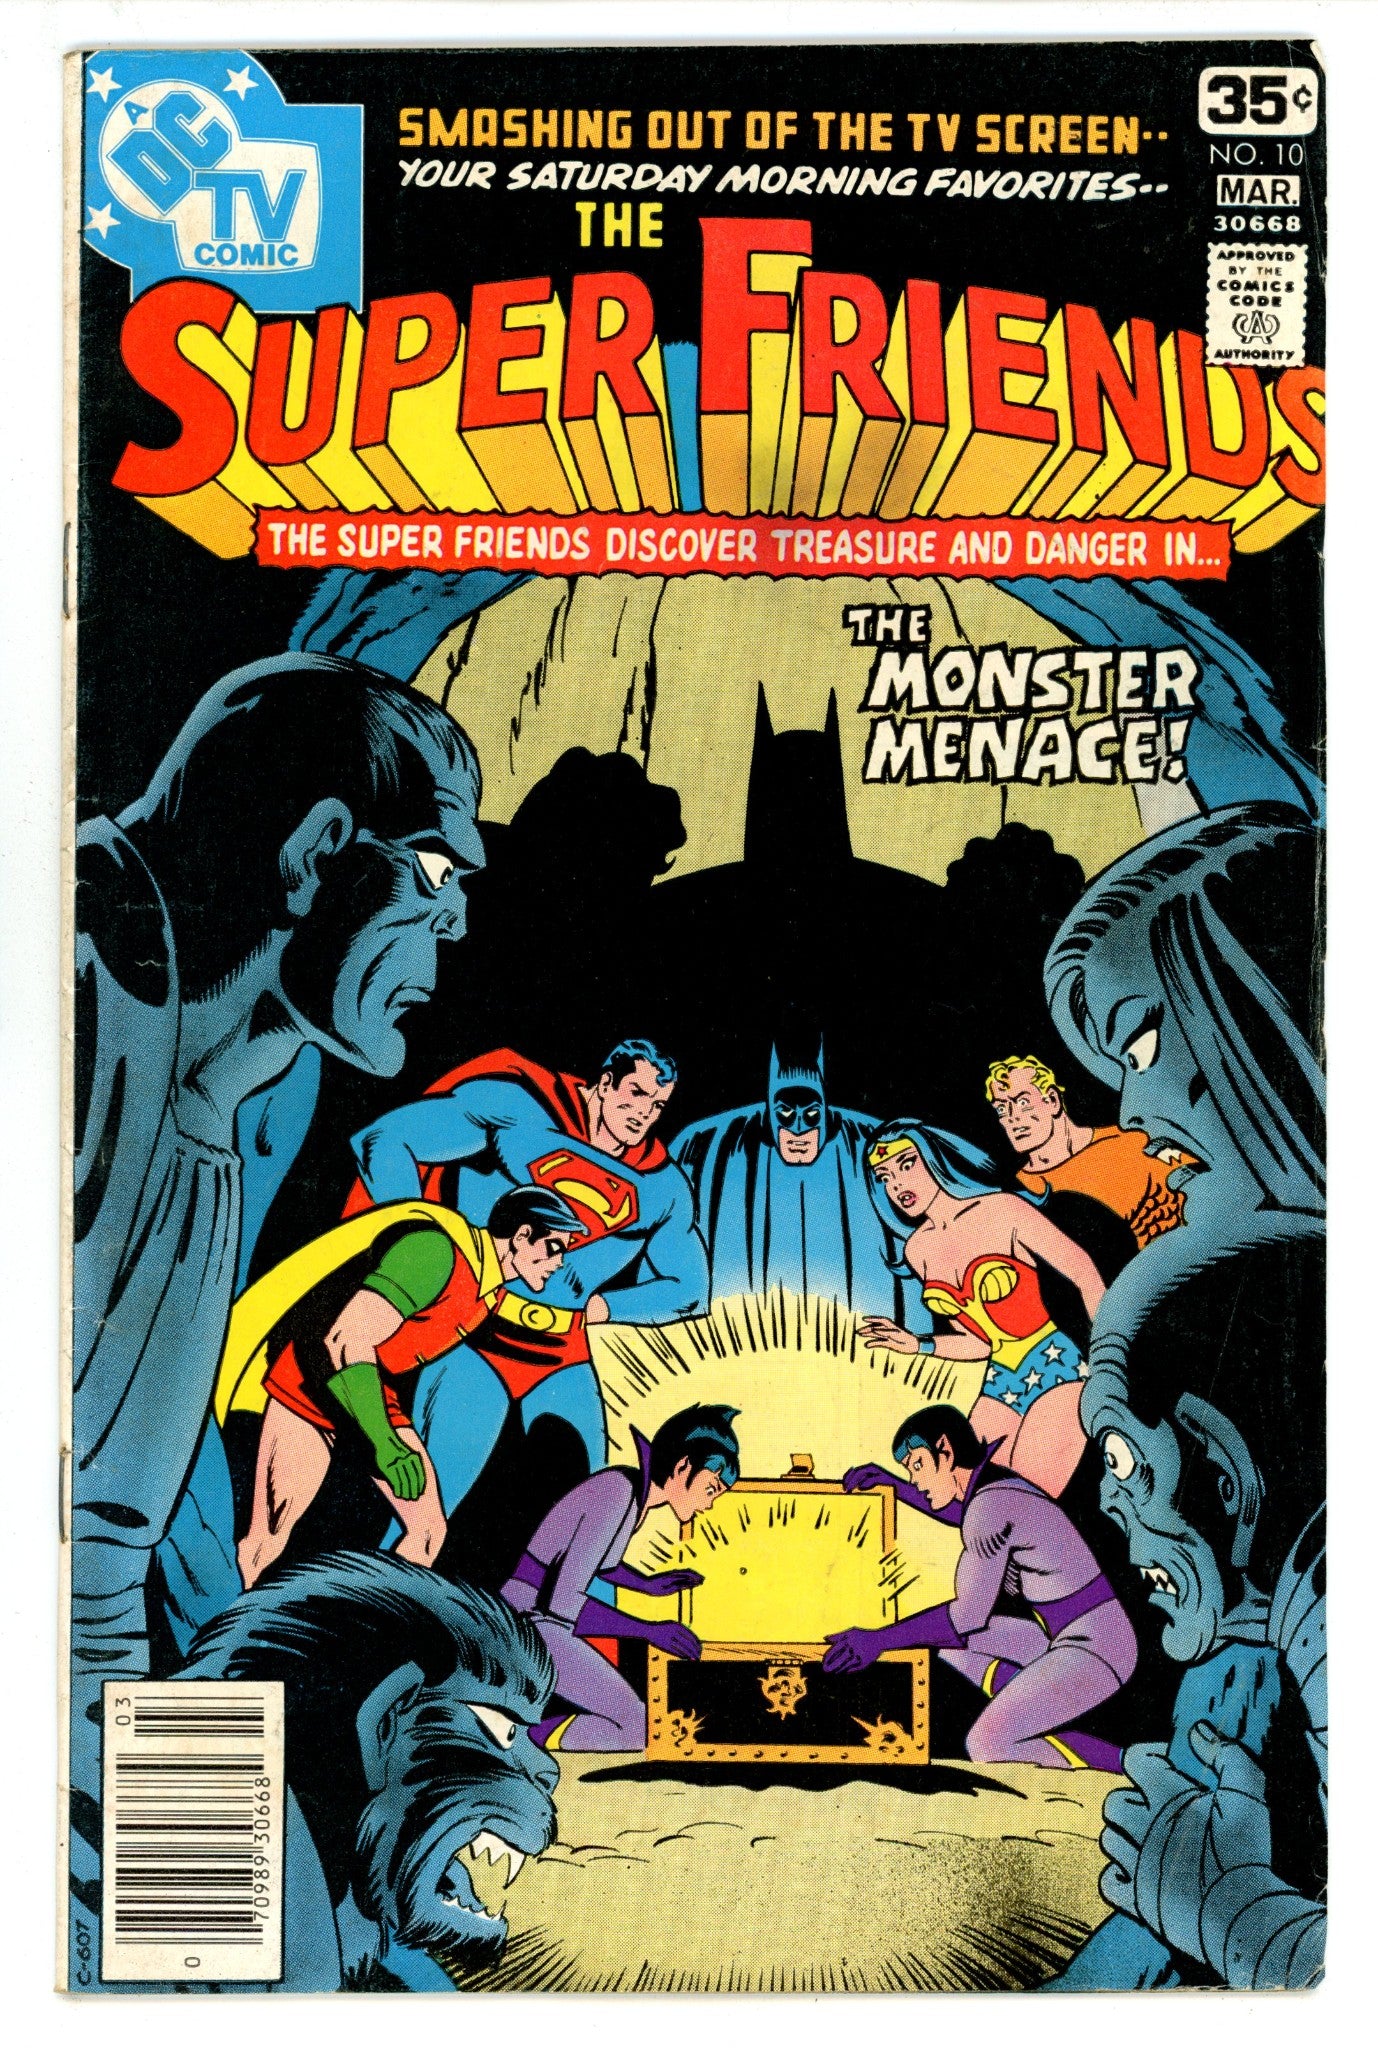 Super Friends Vol 1 10 VG (4.0) (1978) 